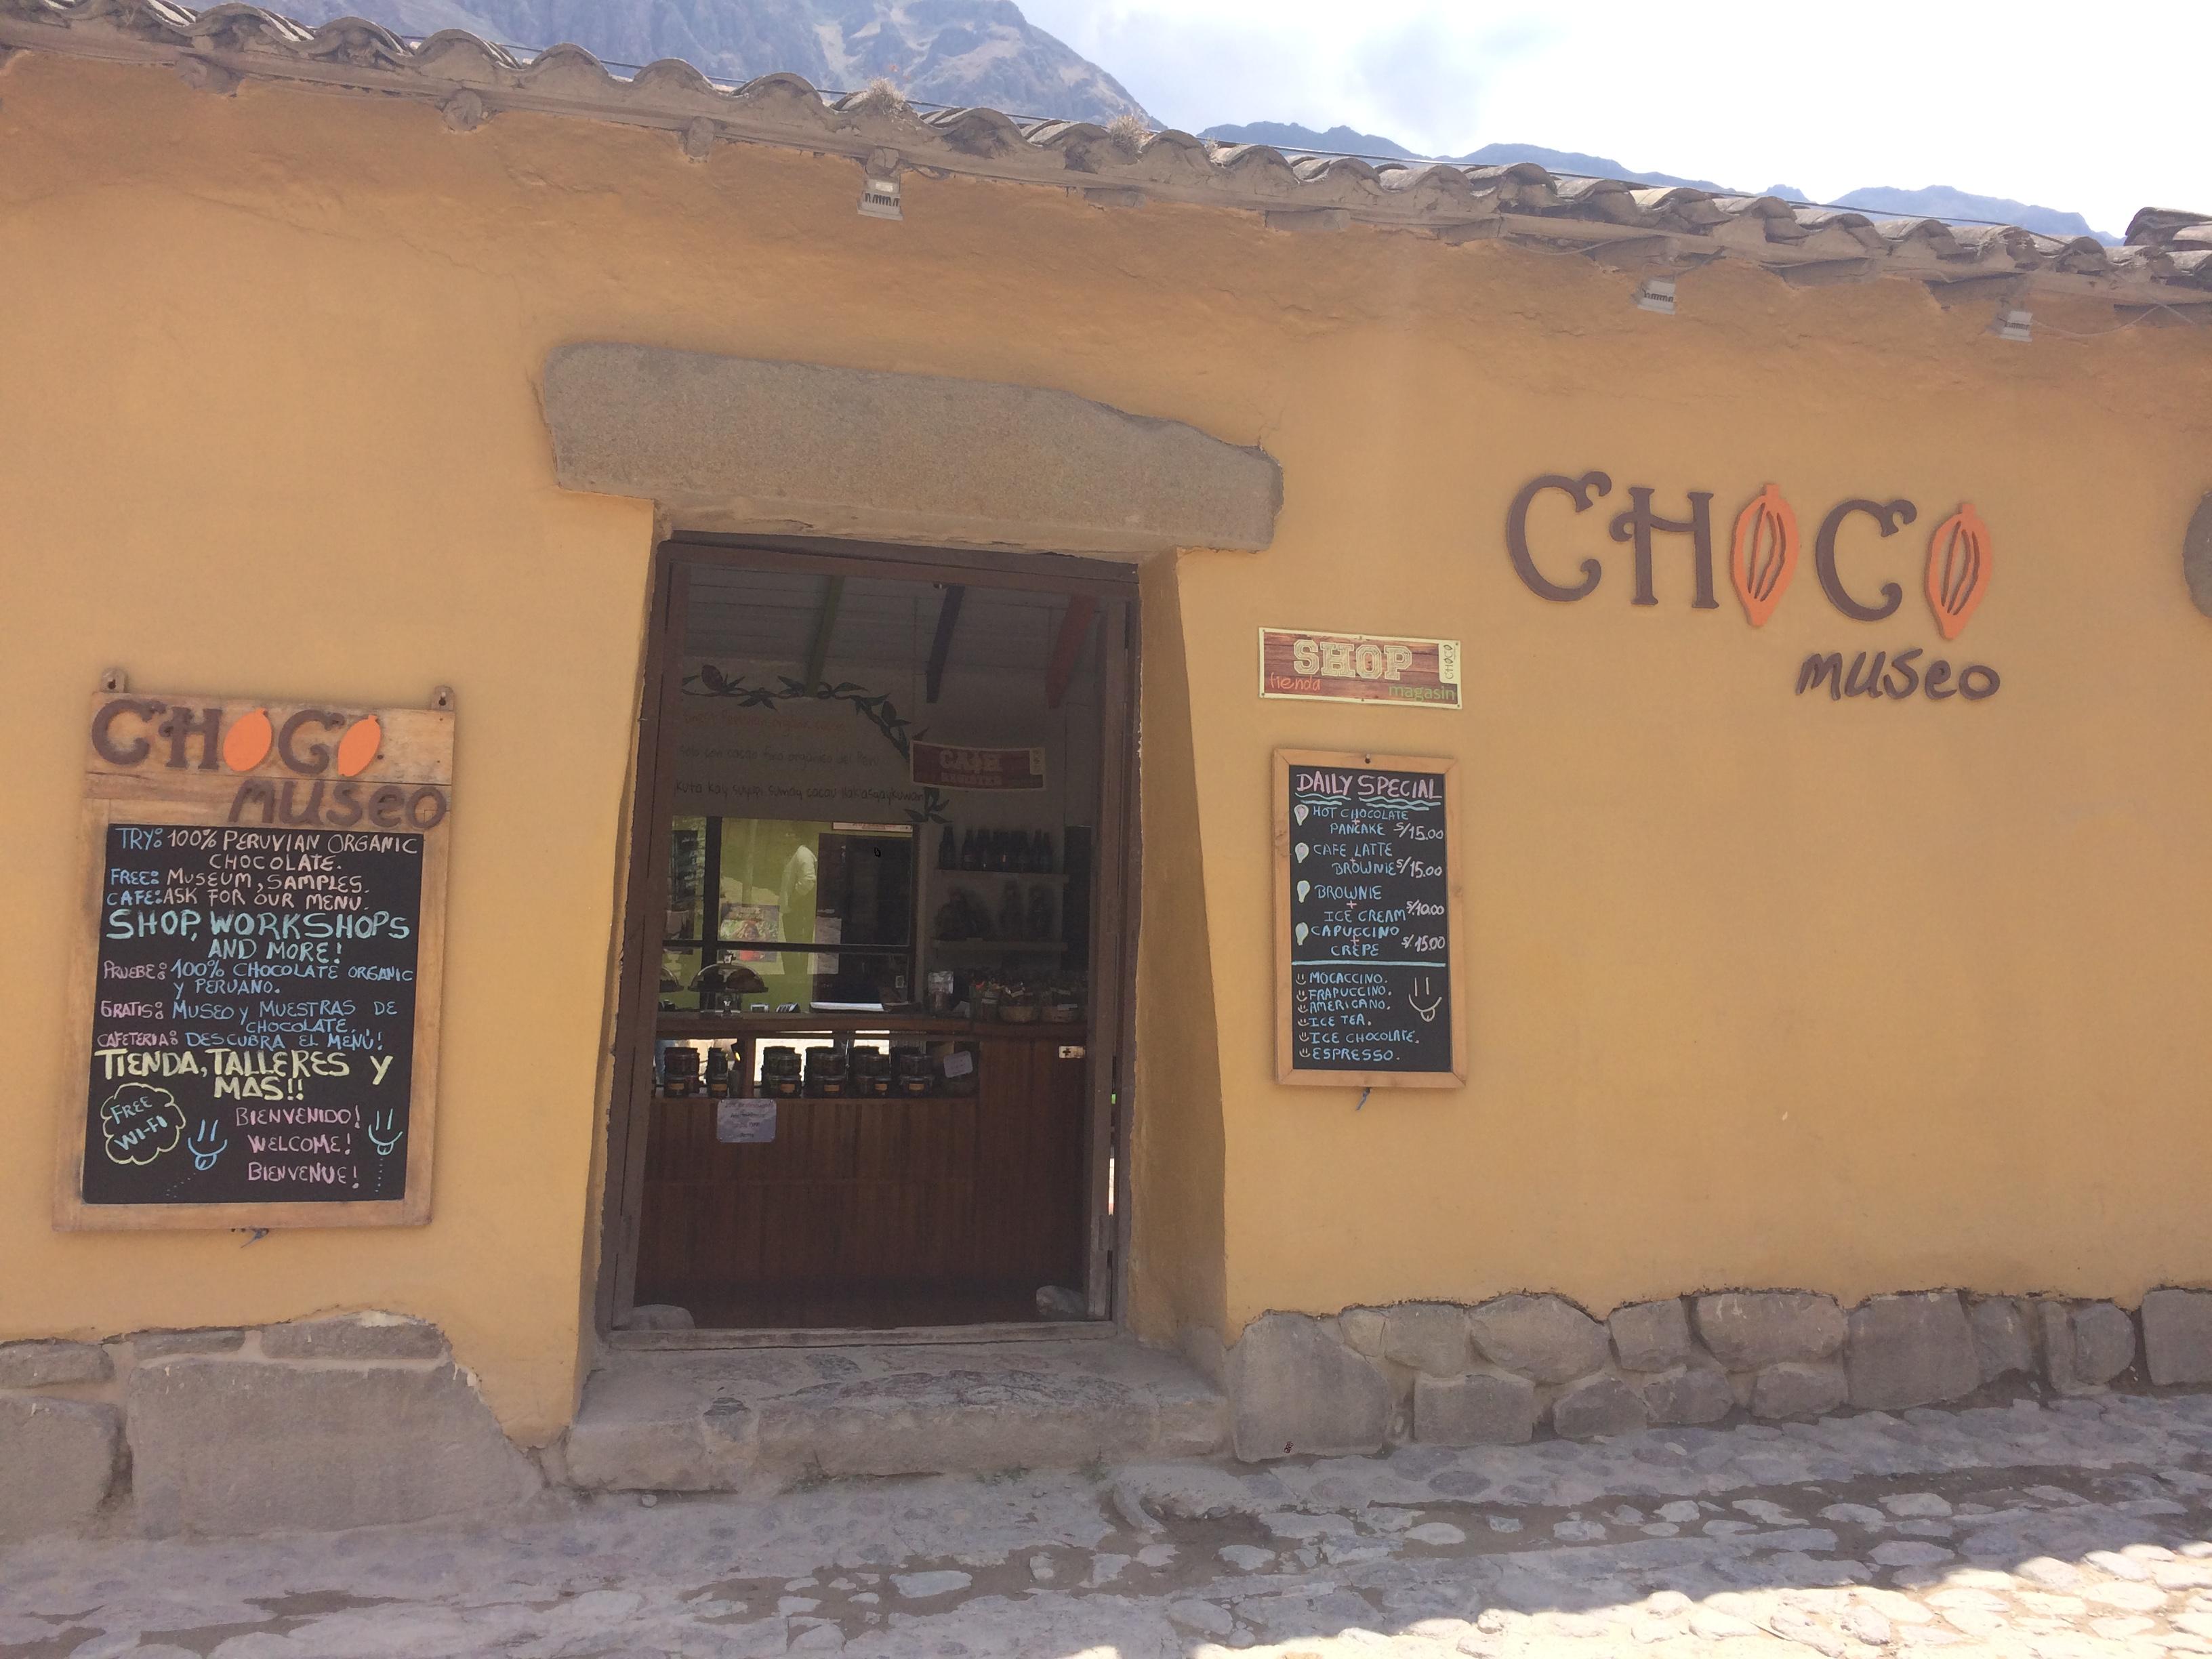  sjokolademuseet I Ollantaytambo, Peru. / / / Den mest omfattende guiden der ute Til Ollantaytambo, Peru, en liten by på vei Til Machu Picchu som jeg hadde gleden av å bo i i noen måneder! / # Ollantaytambo # machu Picchu # sacred # valley #valle # sagrado # Reise # Cusco # cuzco # guide # reiserute # Hva #å # gjøre # spise #sjokolade # museum